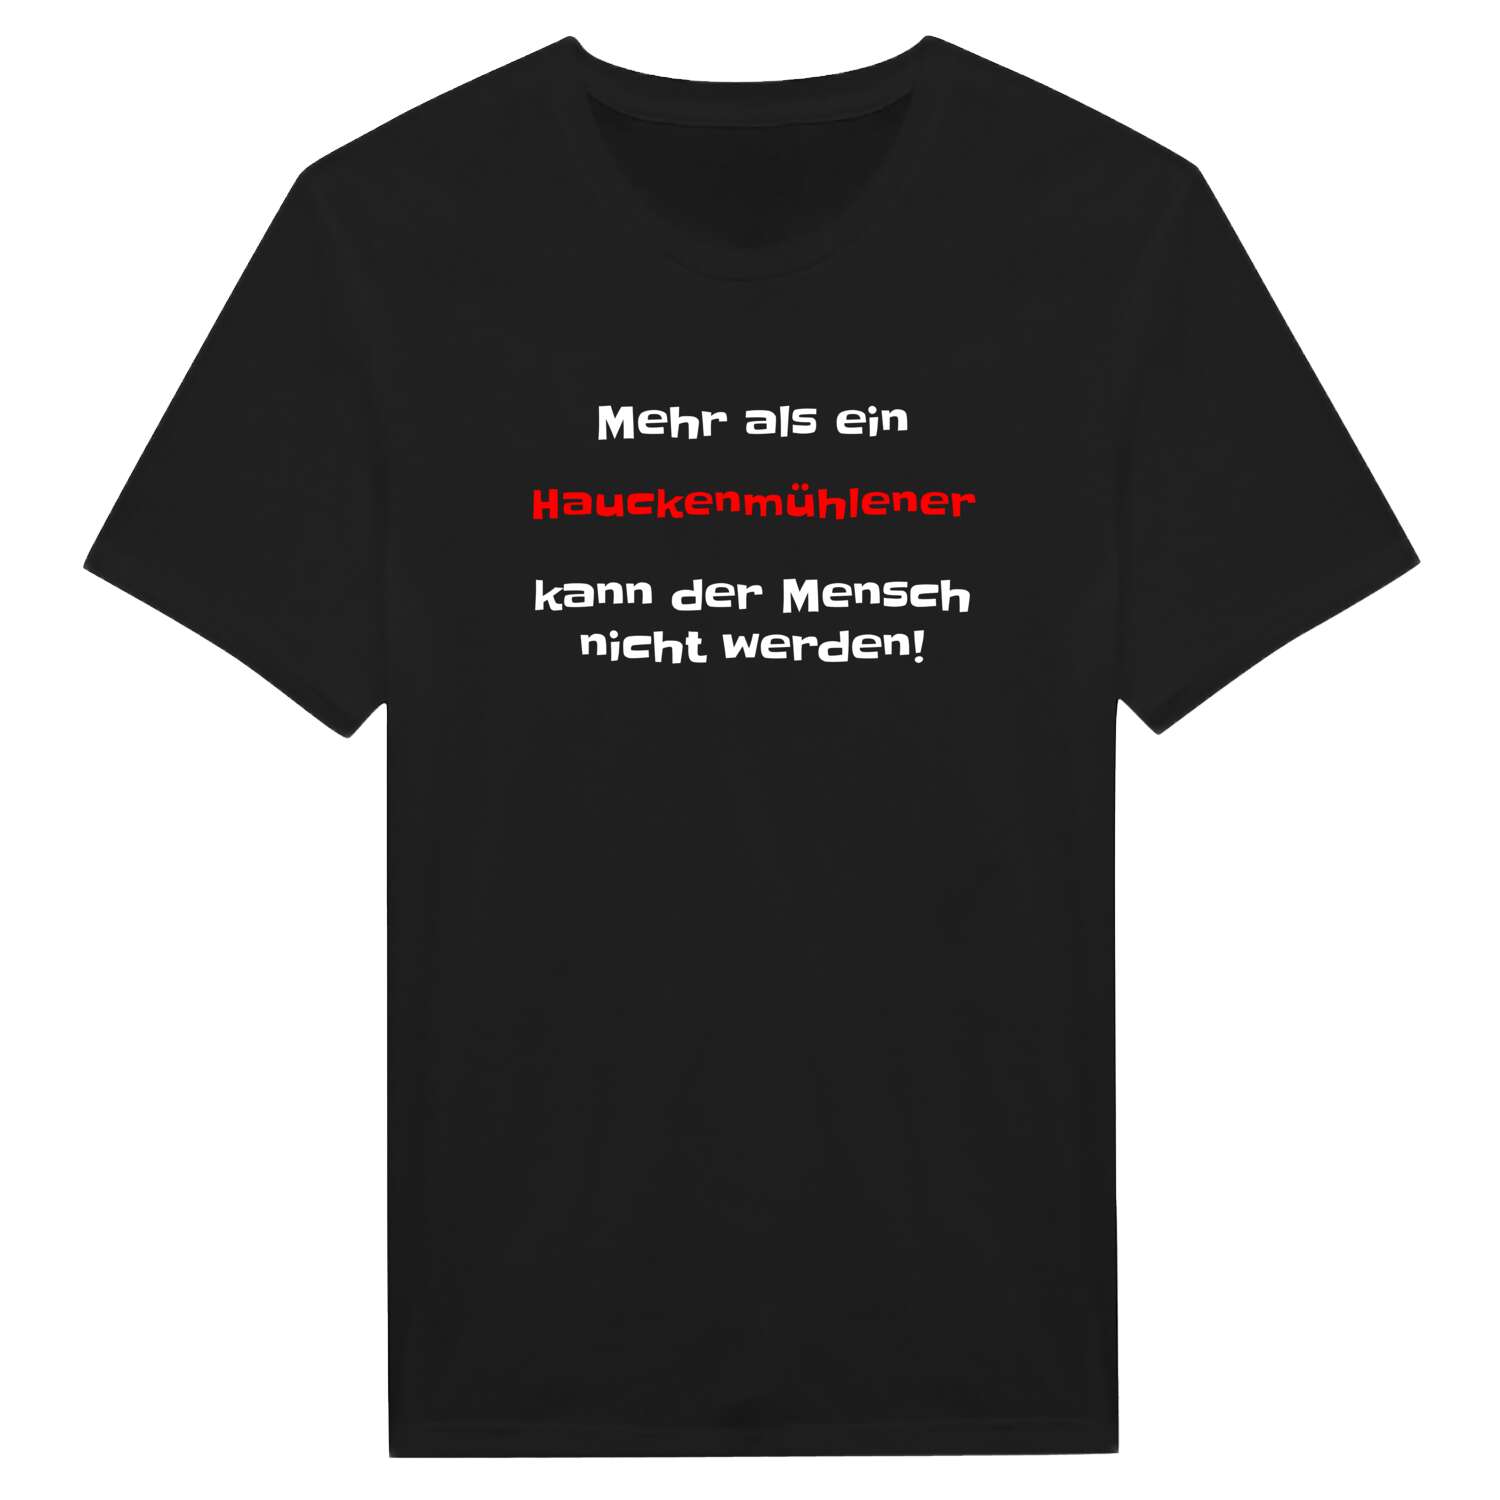 Hauckenmühle T-Shirt »Mehr als ein«